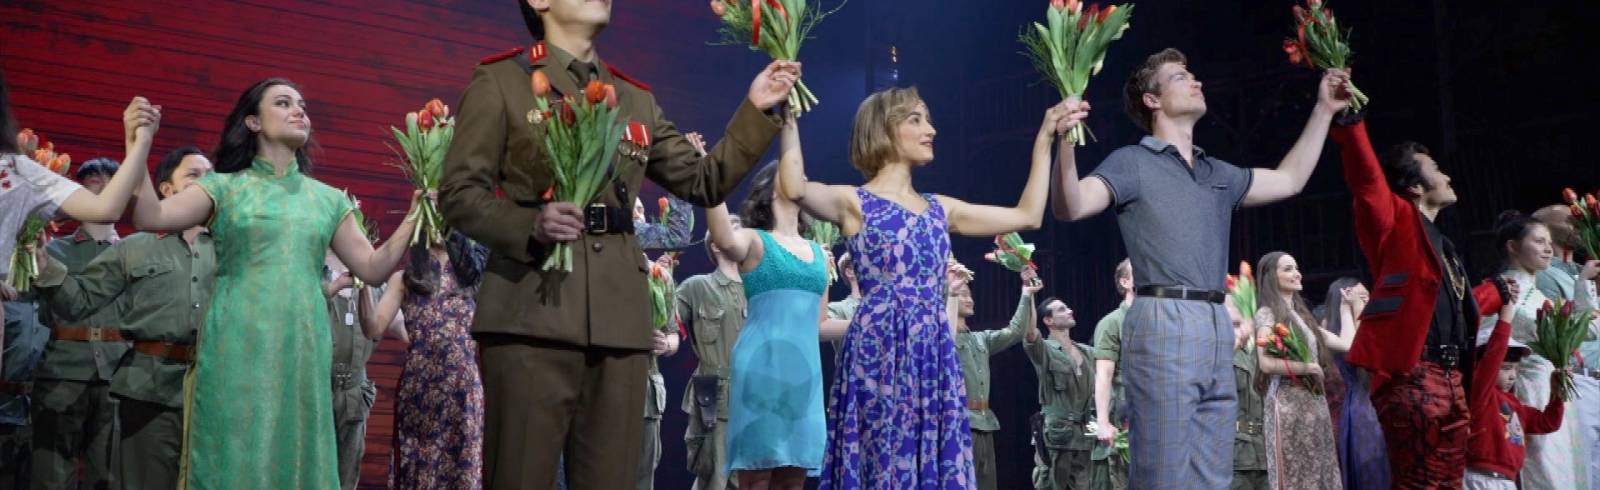 Miss Saigon: Große Premiere im Raimund Theater!